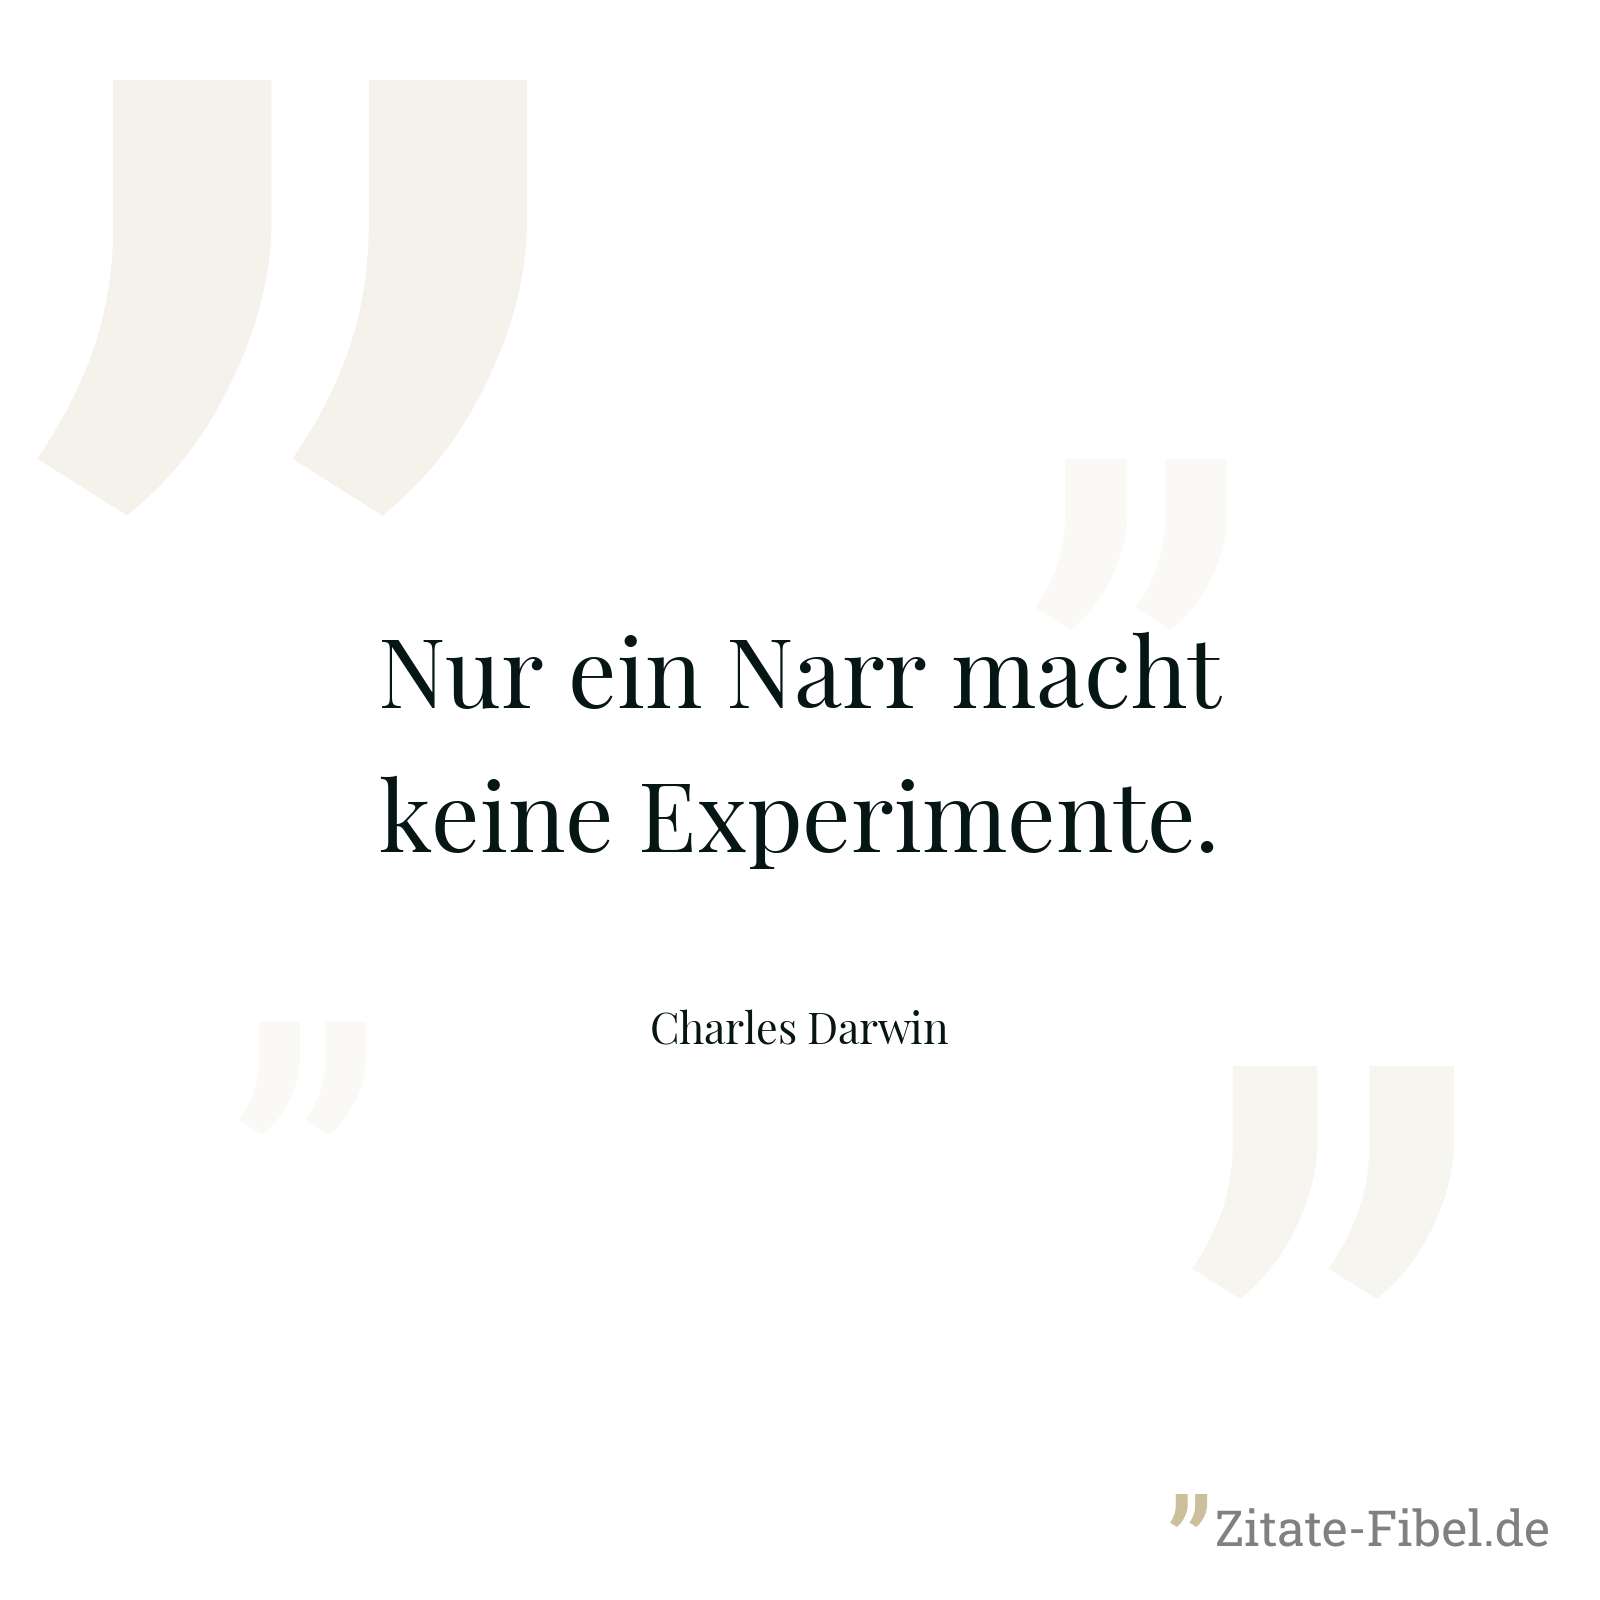 Nur ein Narr macht keine Experimente. - Charles Darwin